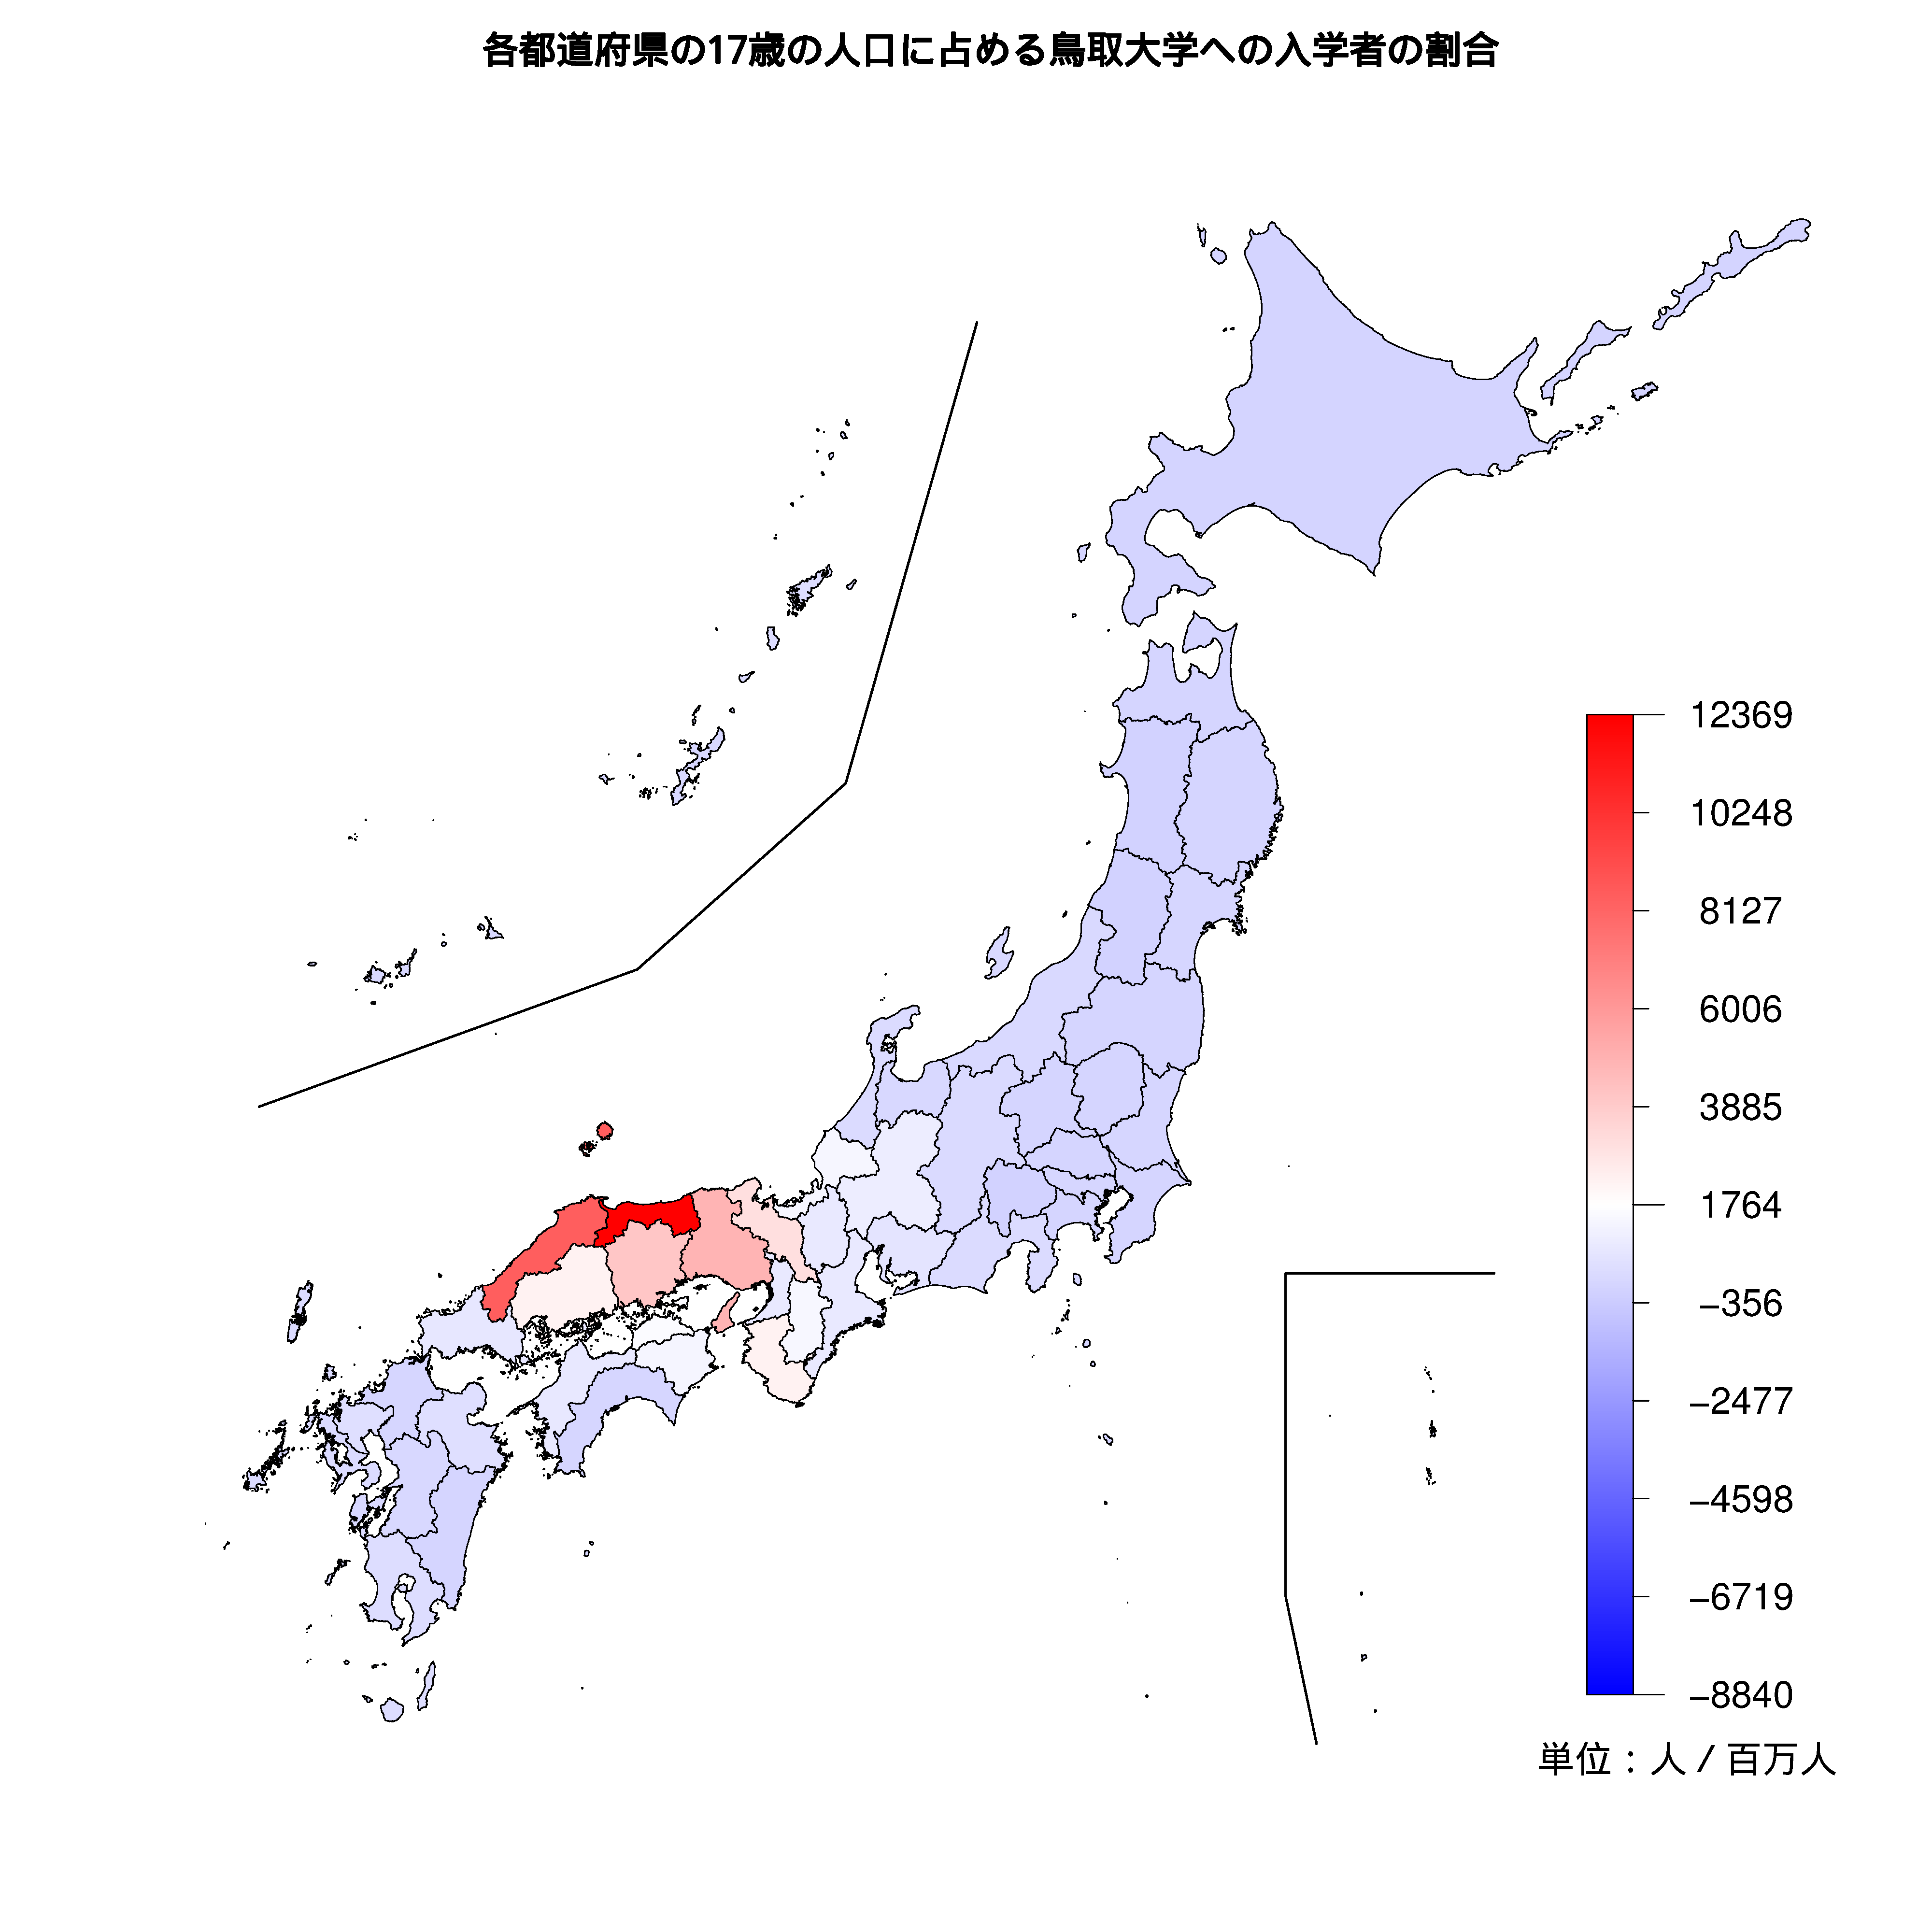 鳥取大学への入学者が多い都道府県の色分け地図